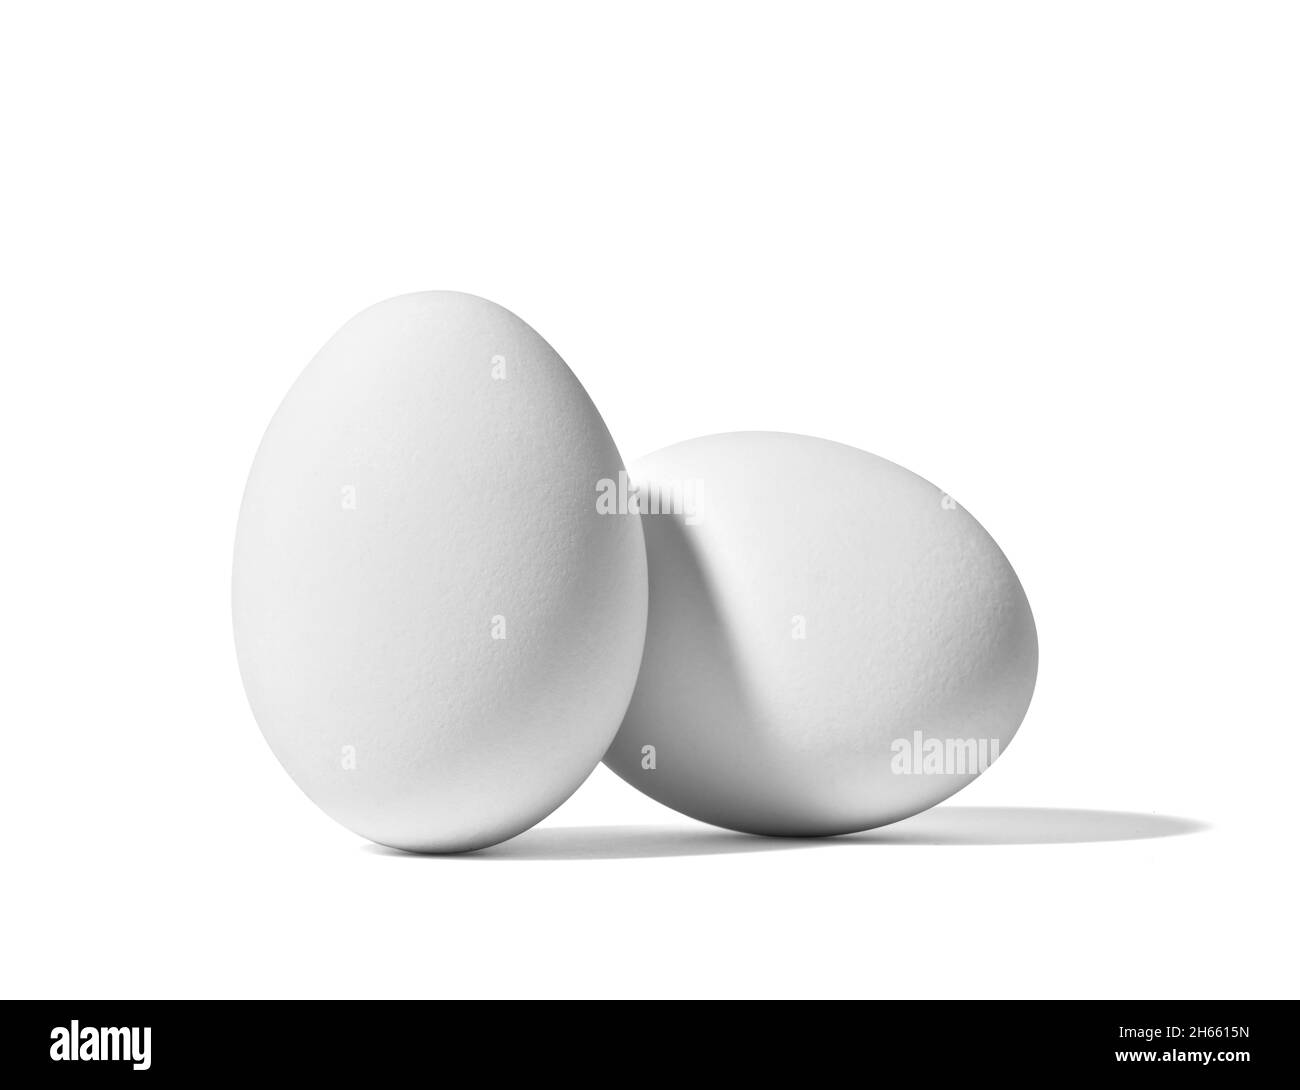 uovo cibo bianco colazione ingrediente di base proteine isolato pollo sano pasqua organico eggshell Foto Stock